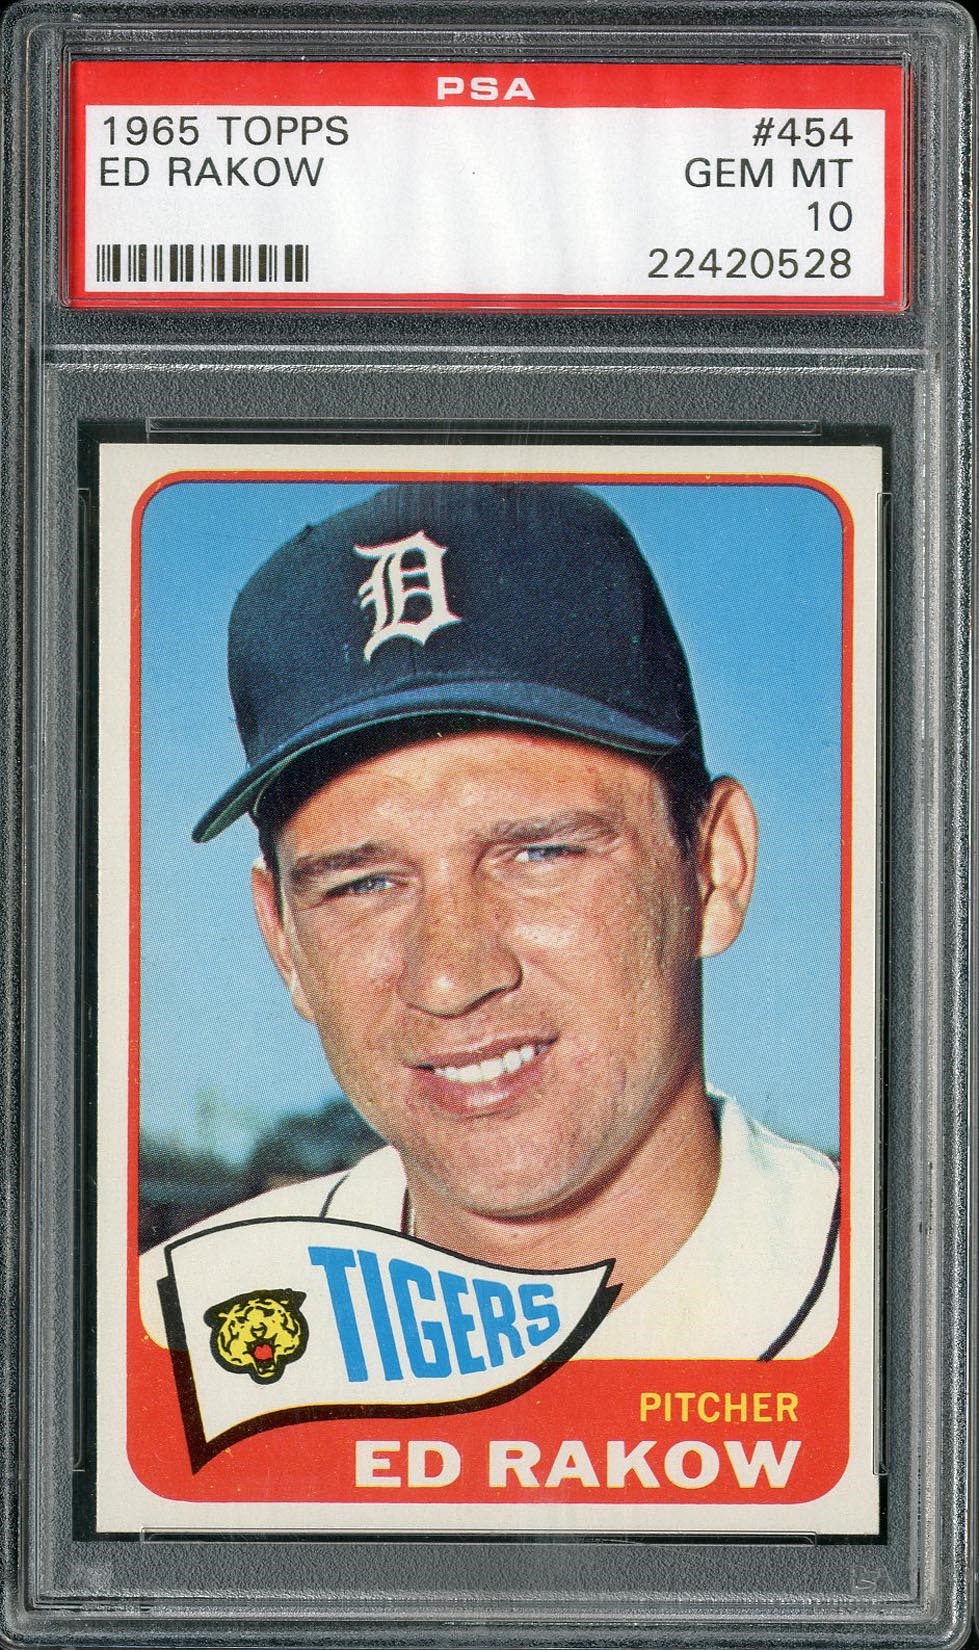 Baseball and Trading Cards - 1965 Topps Ed Rakow #454 PSA GEM MT 10